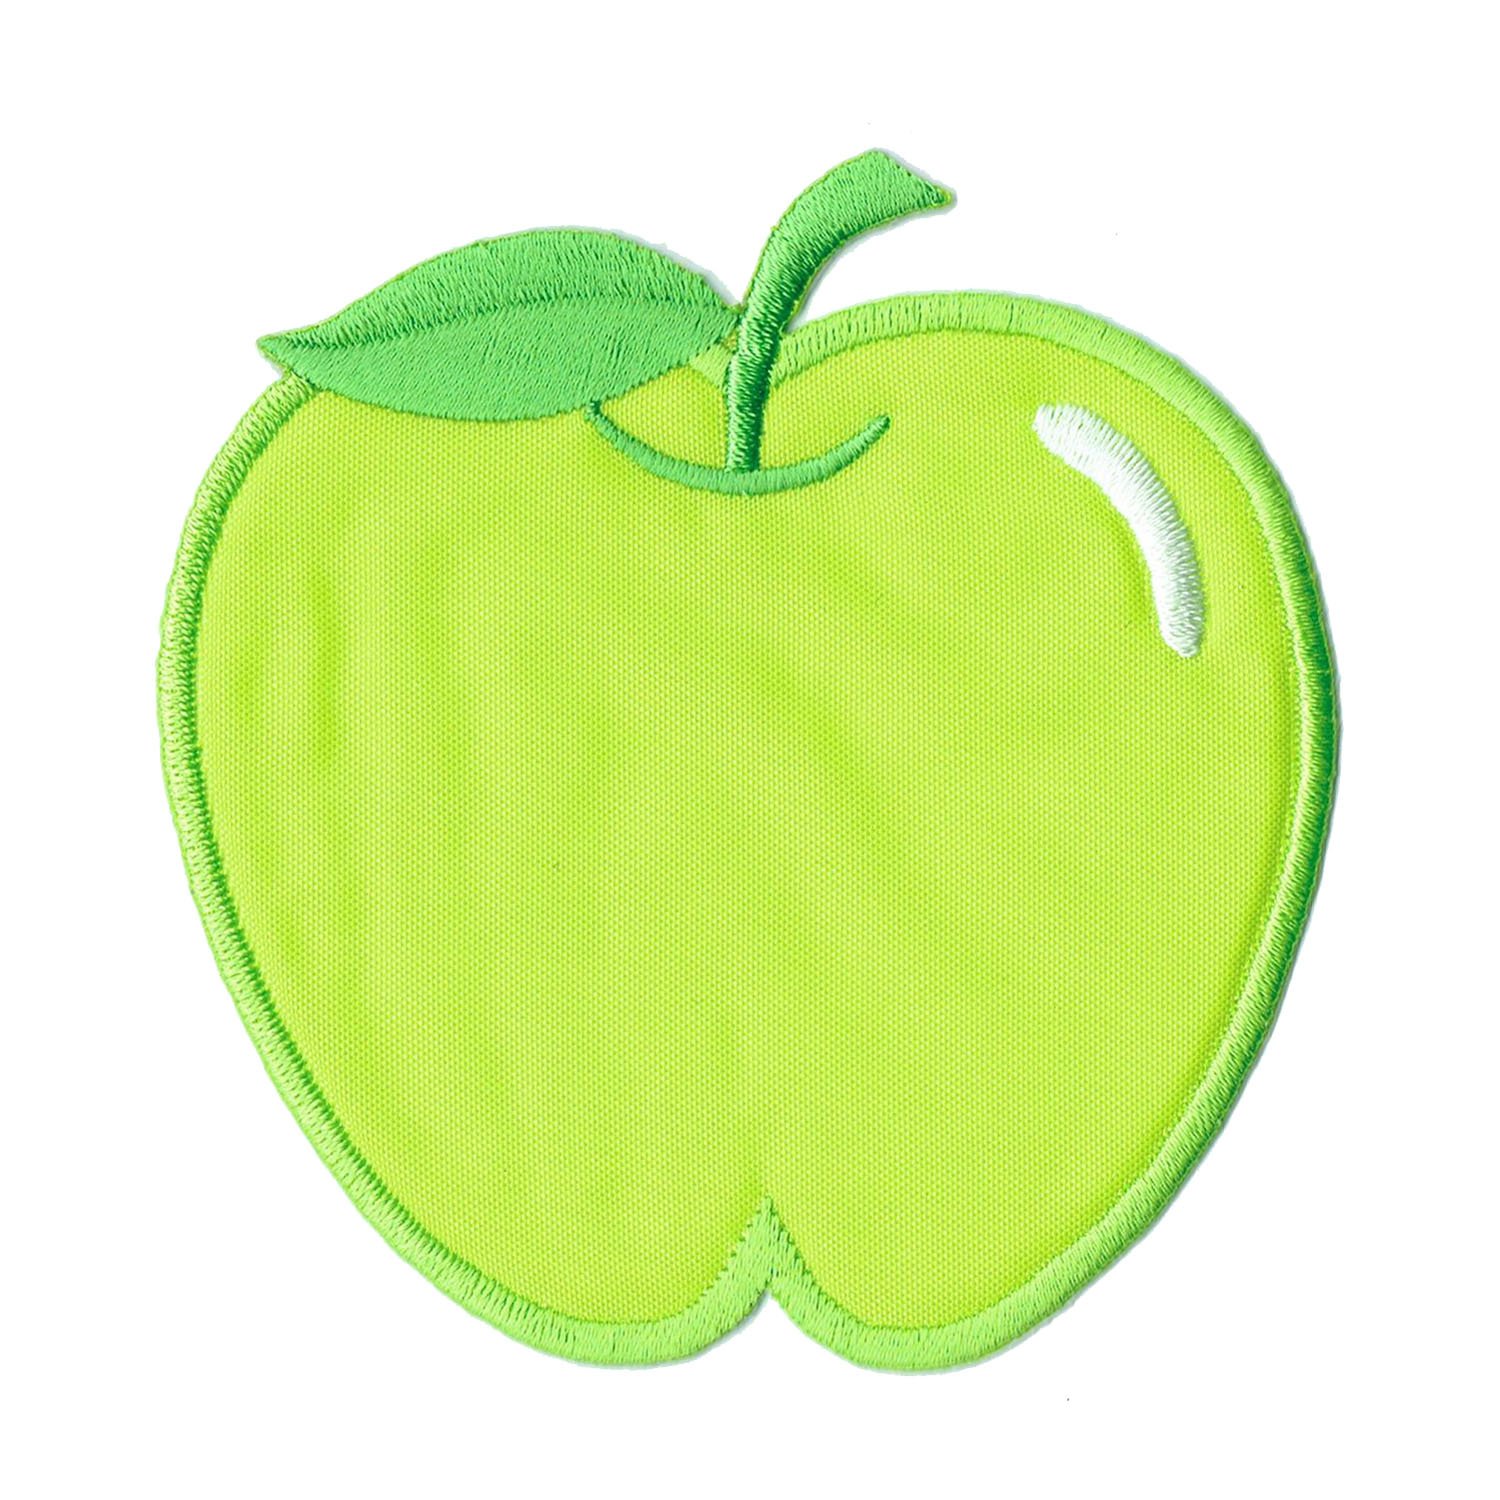 Aufnäher Bügelbild Aufbügler Iron on Patches Applikation grüner Apfel Kinder Baby Süss von Bestellmich / Aufnäher